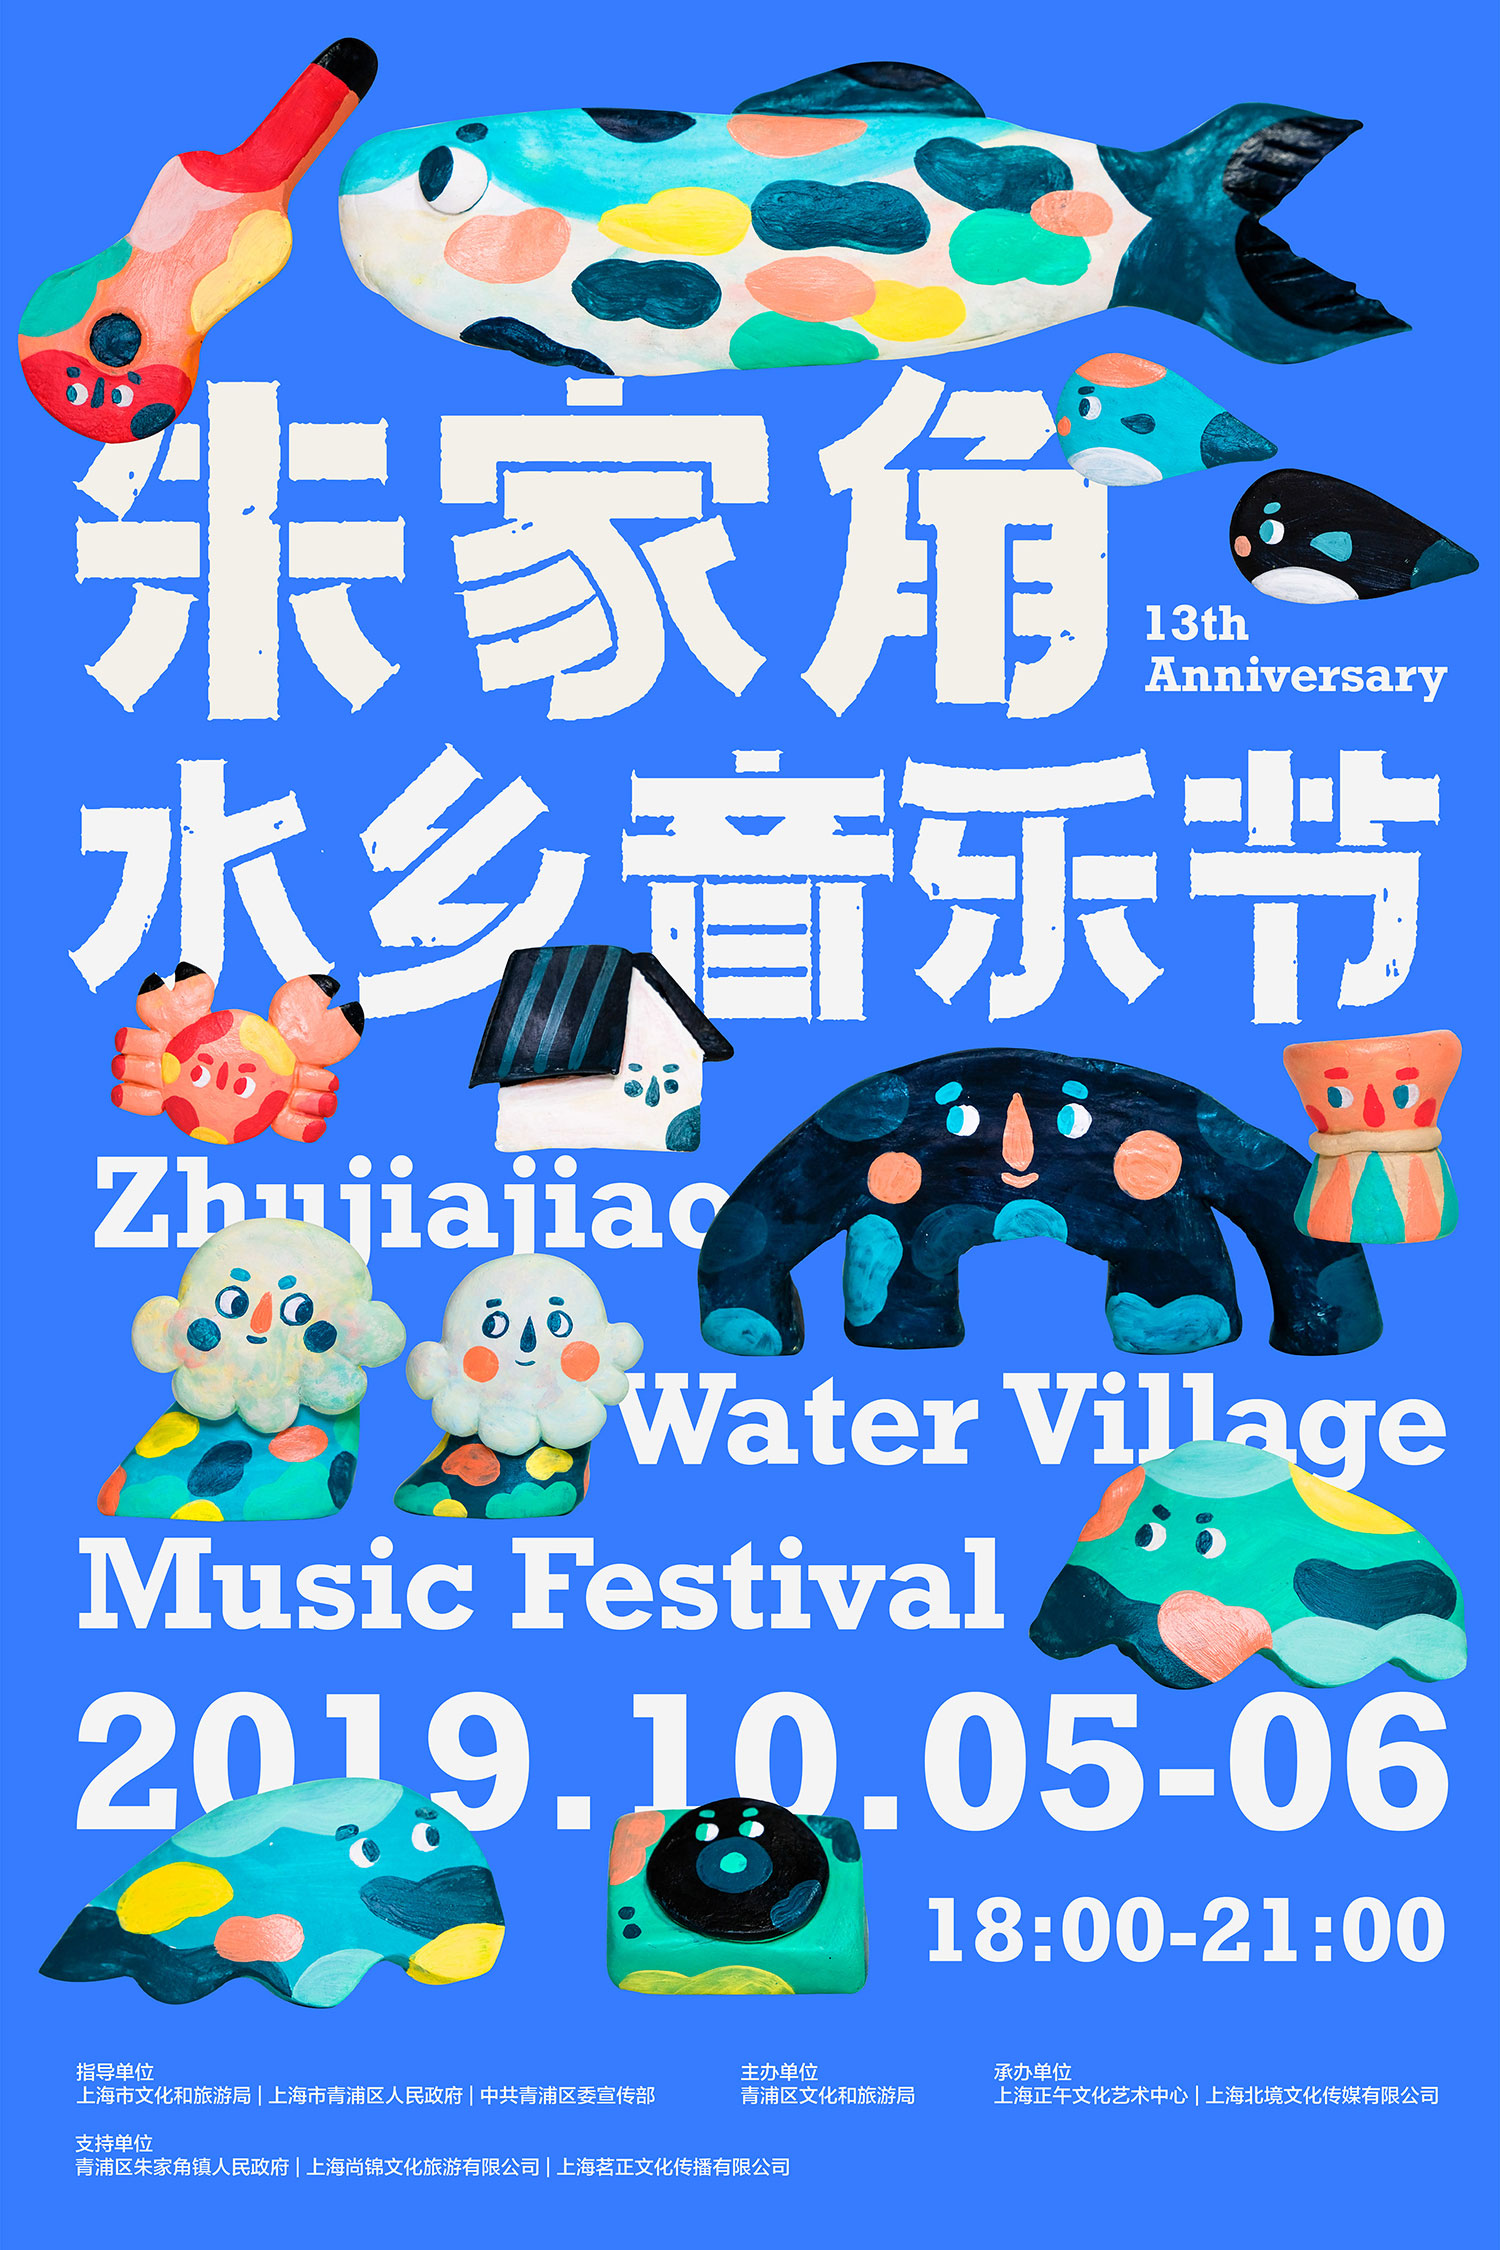 2019 上海朱家角水鄉音樂節 Zhujiajiao Water Village Music Festival